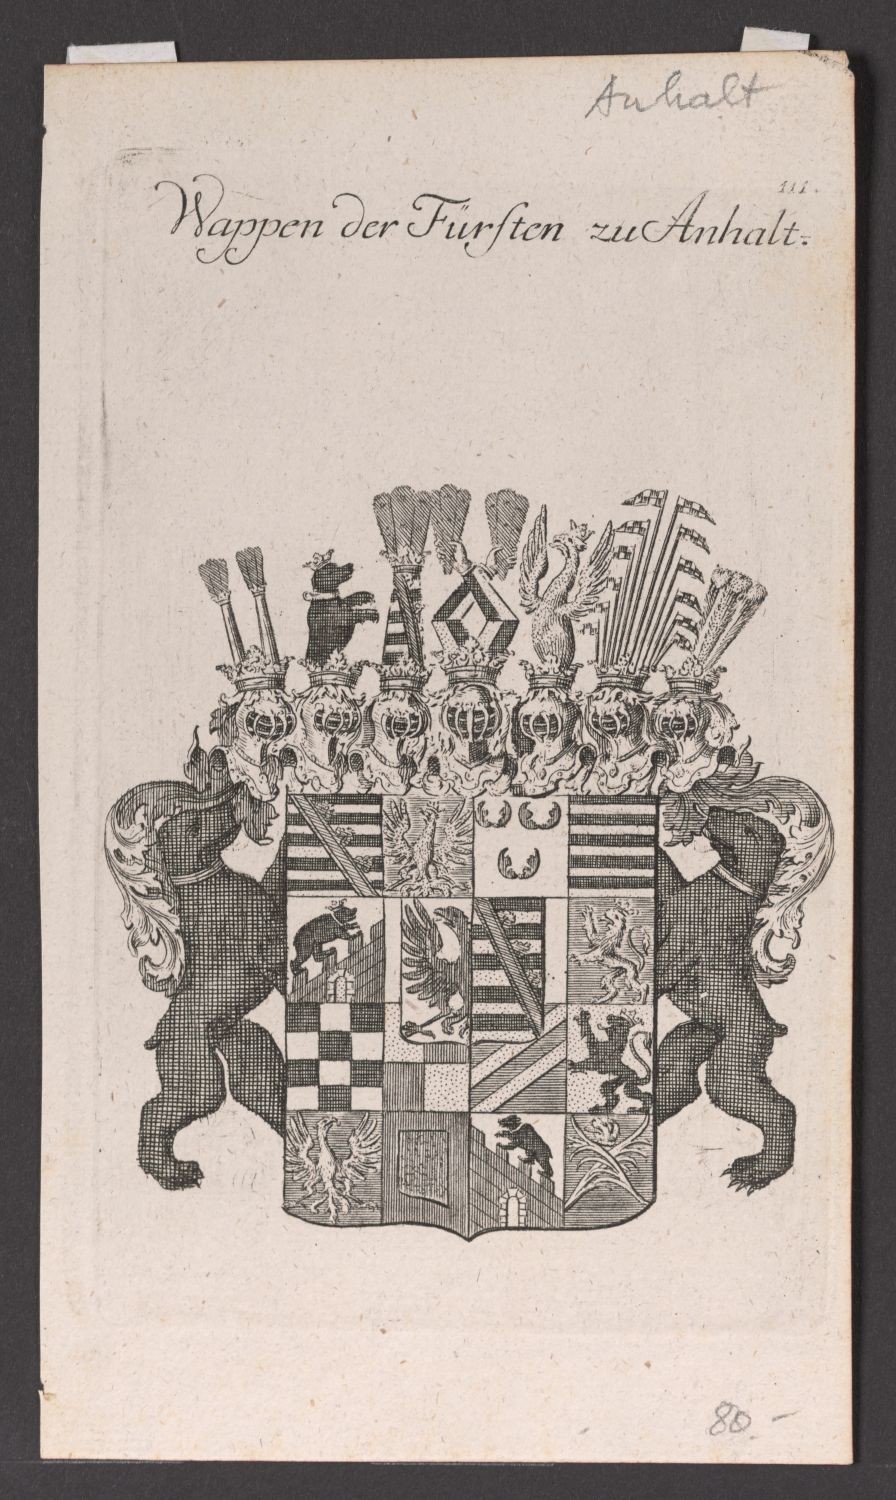 Wappen der Fürsten zu Anhalt (Stiftung Händelhaus, Halle CC BY-NC-SA)